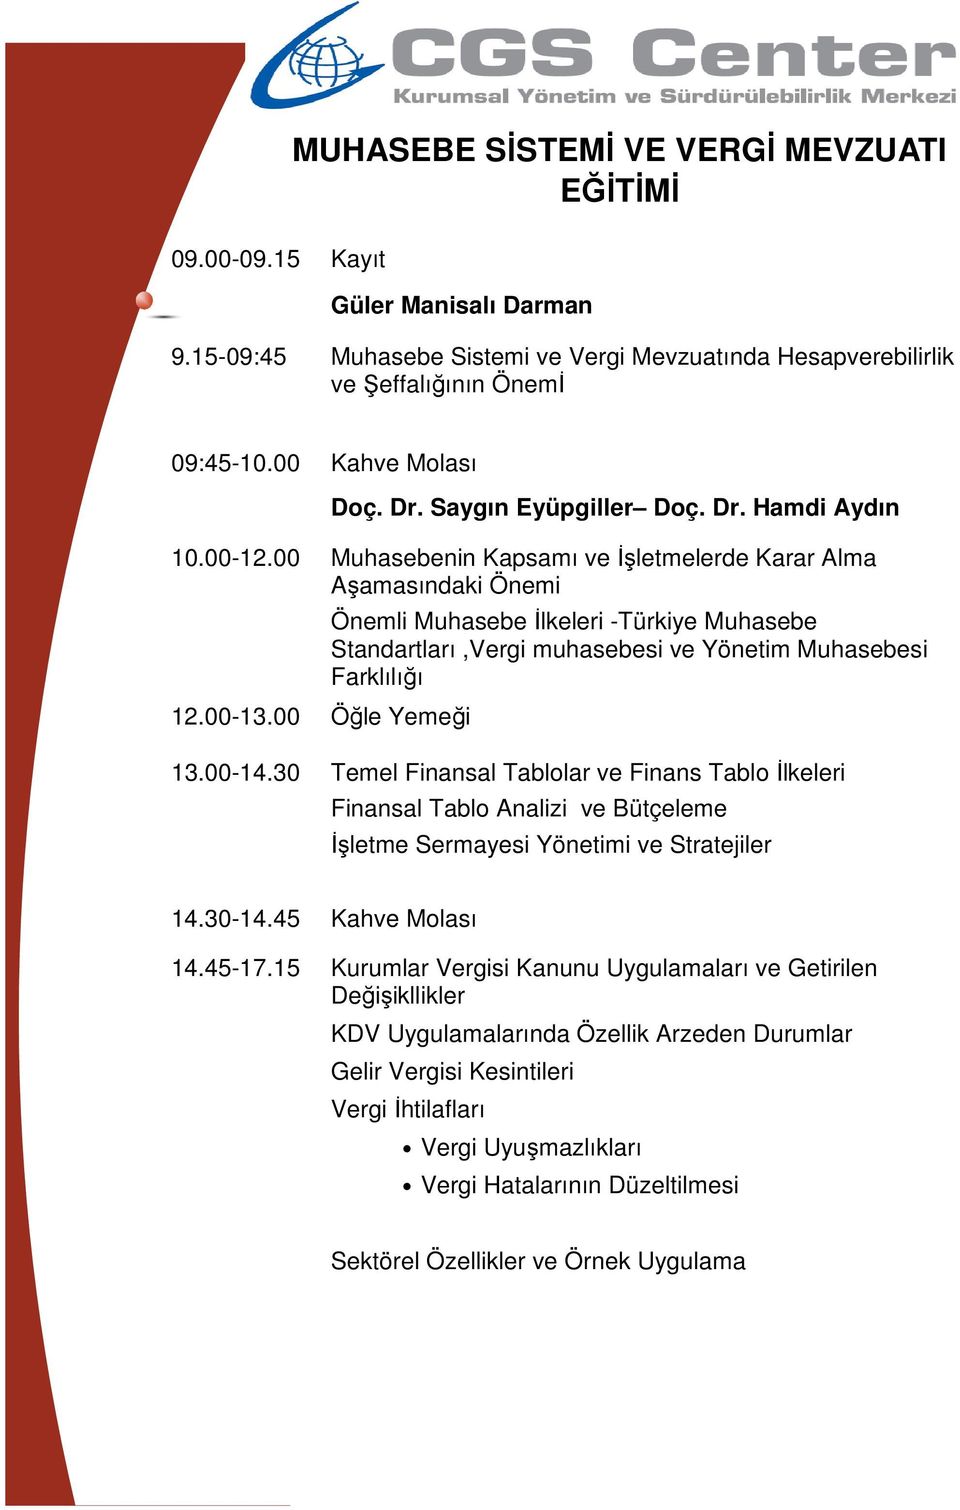 00 Öğle Yemeği Önemli Muhasebe İlkeleri -Türkiye Muhasebe Standartları,Vergi muhasebesi ve Yönetim Muhasebesi Farklılığı 13.00-14.